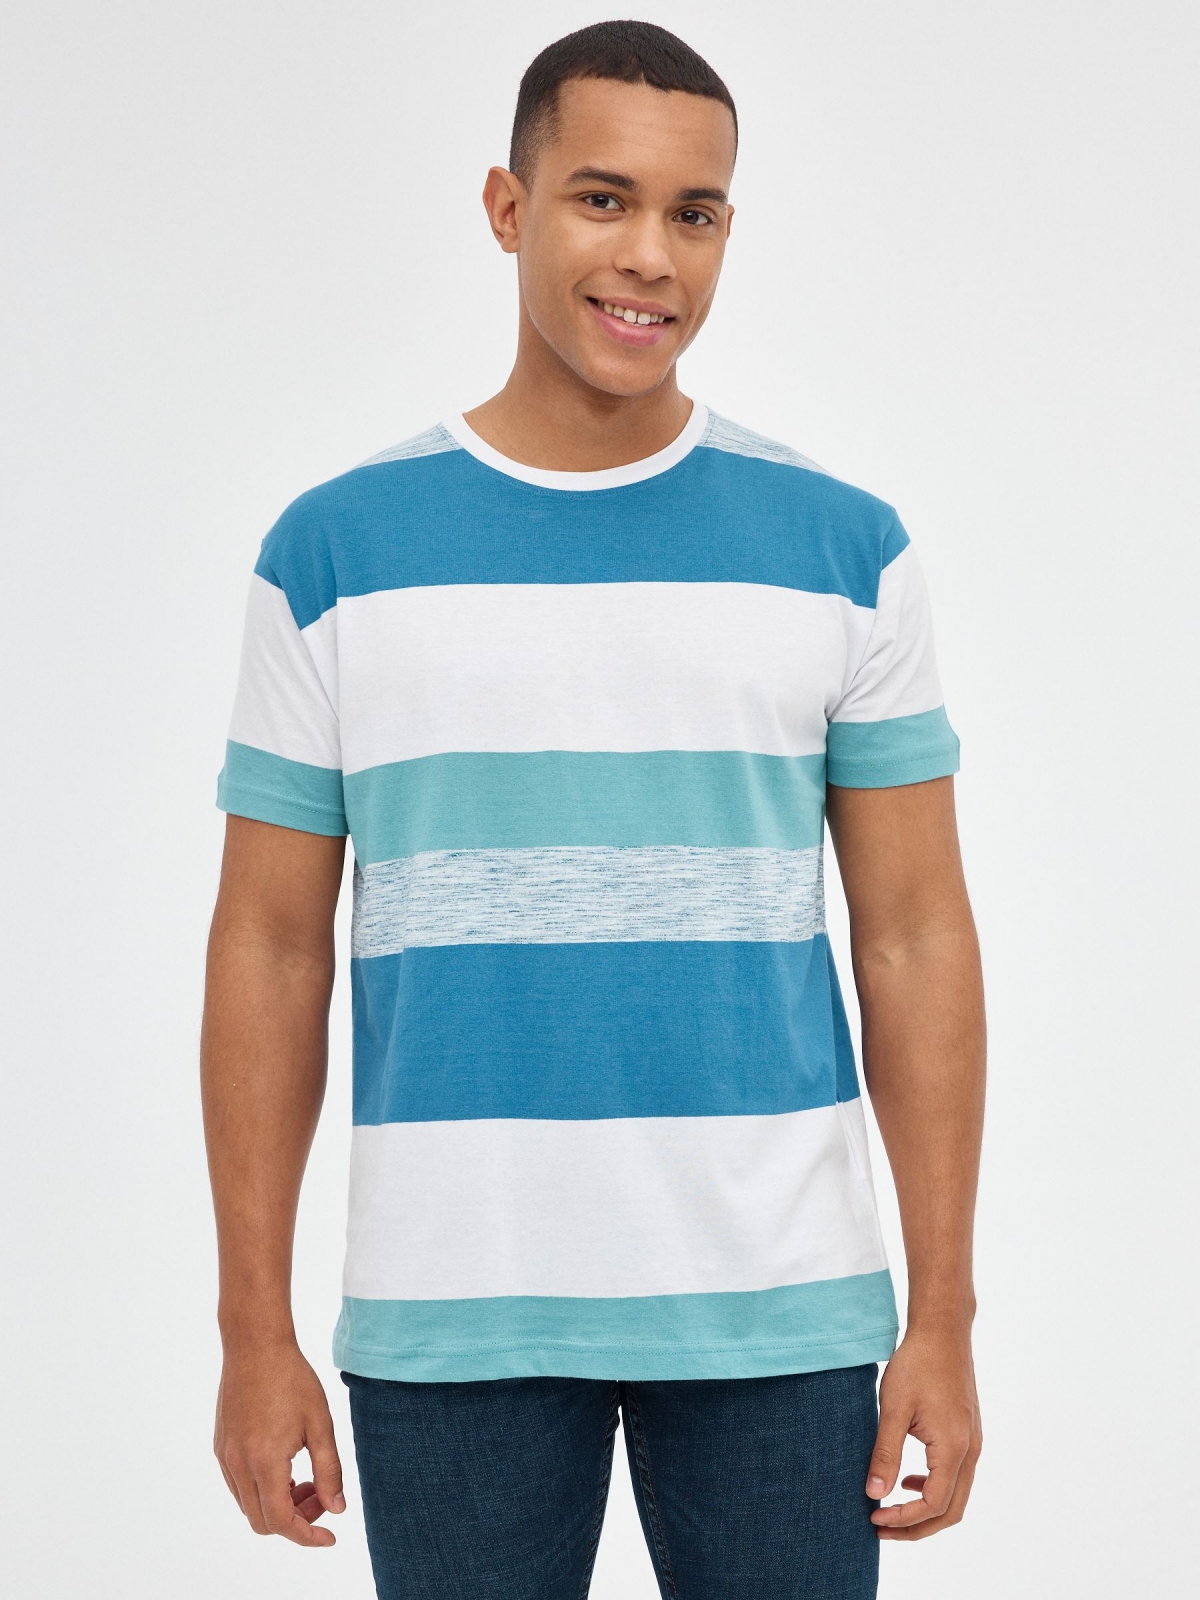 Camiseta estampado de rayas azul vista media frontal